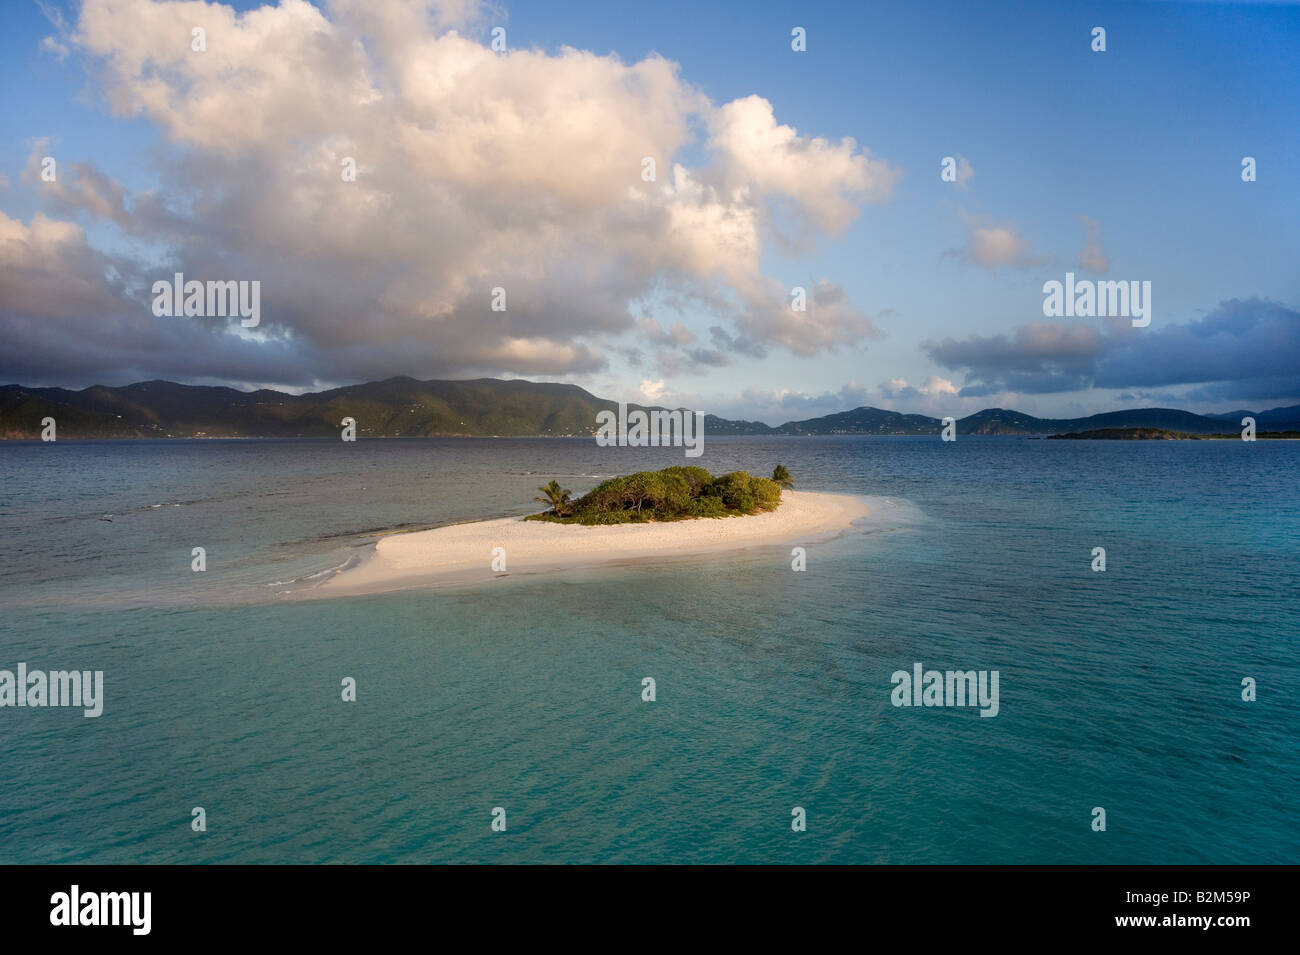 La petite île déserte de Sandy Spit British West Indies c'est une rare vue de l'île surpeuplée normalement Banque D'Images